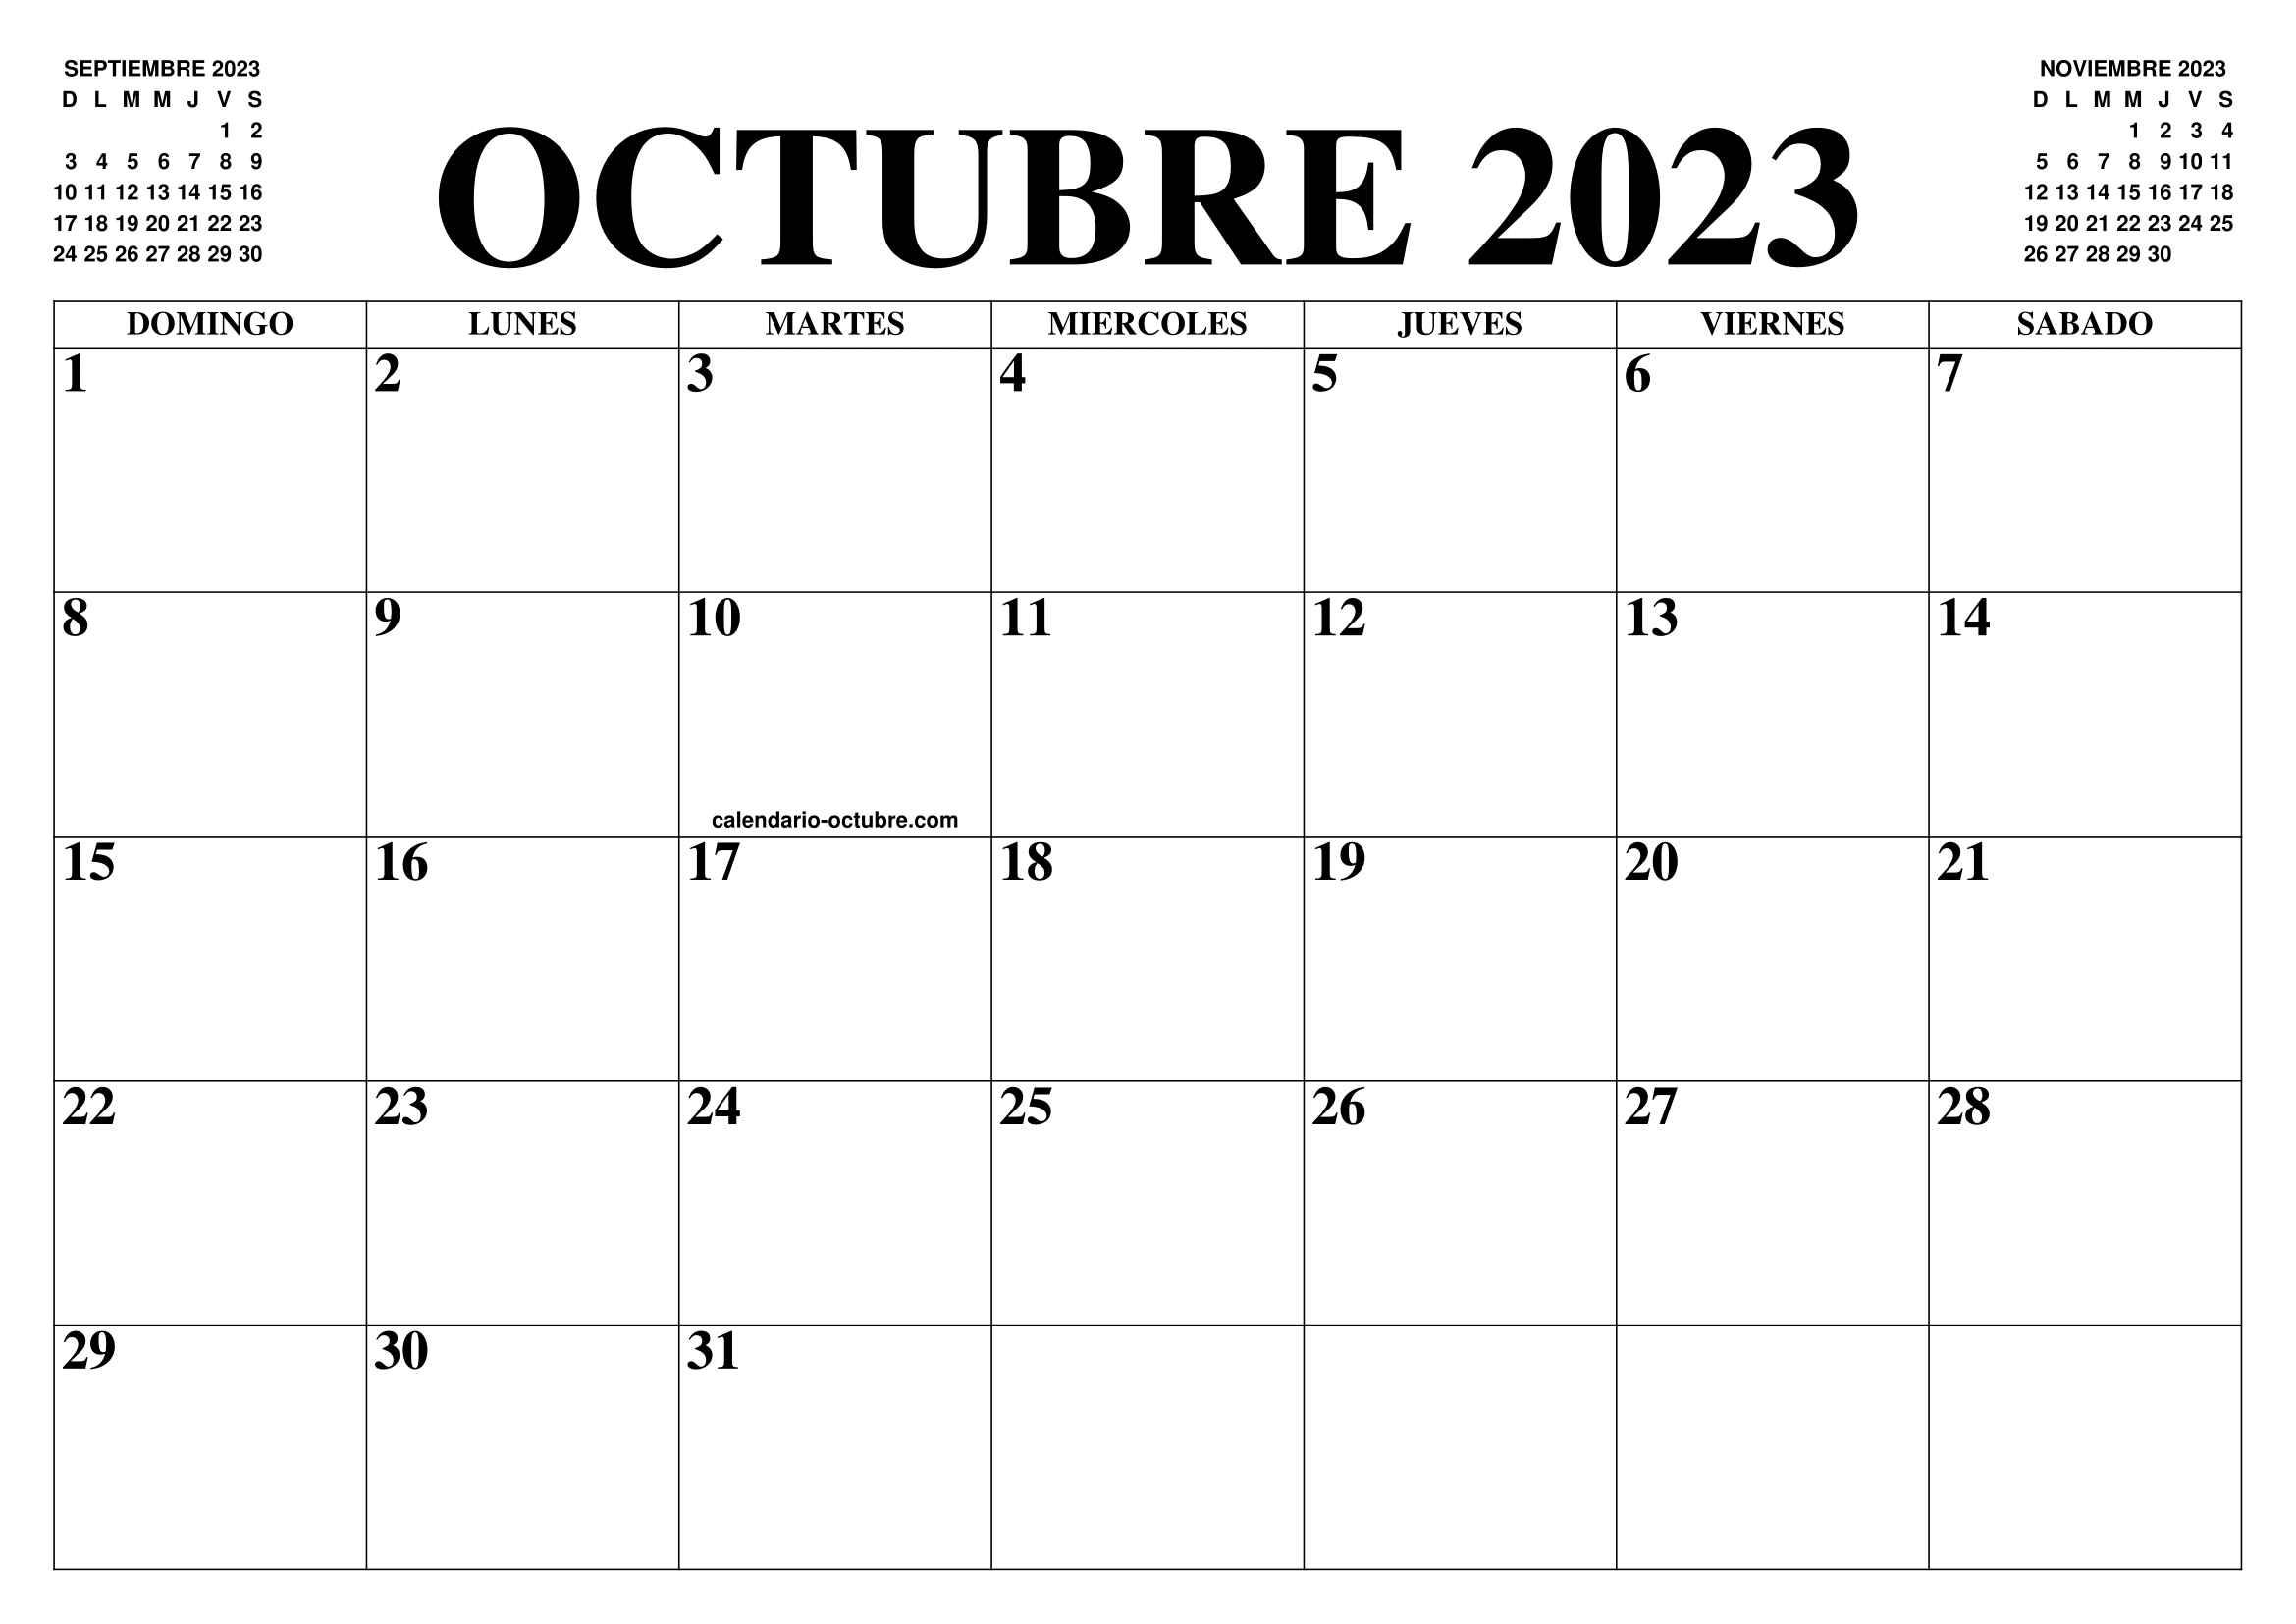 Calendario octubre imprimir 2023